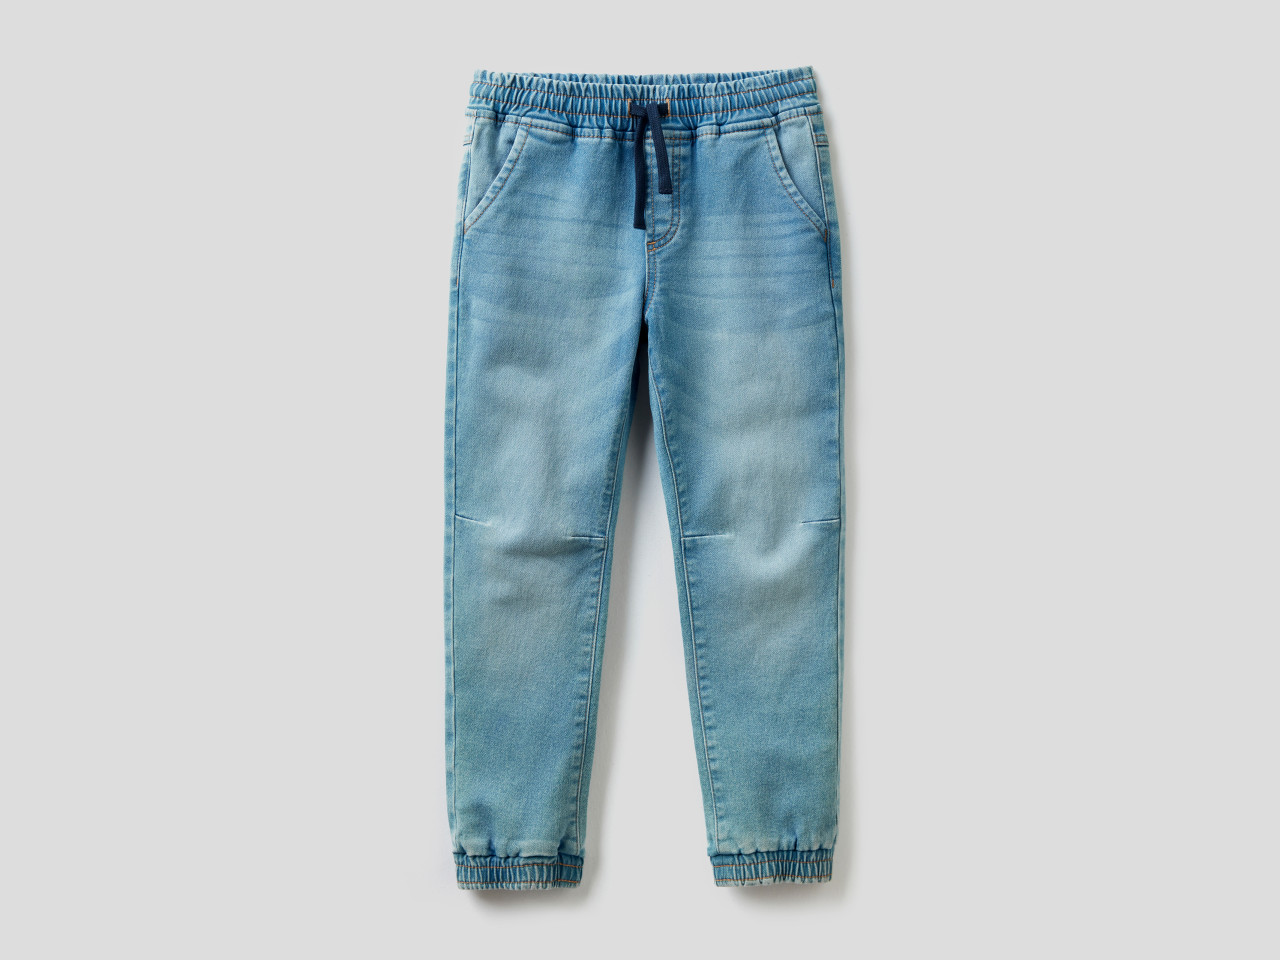 KINDER Hosen Basisch Benetton Jeans Rabatt 77 % Dunkelblau 3-6M 